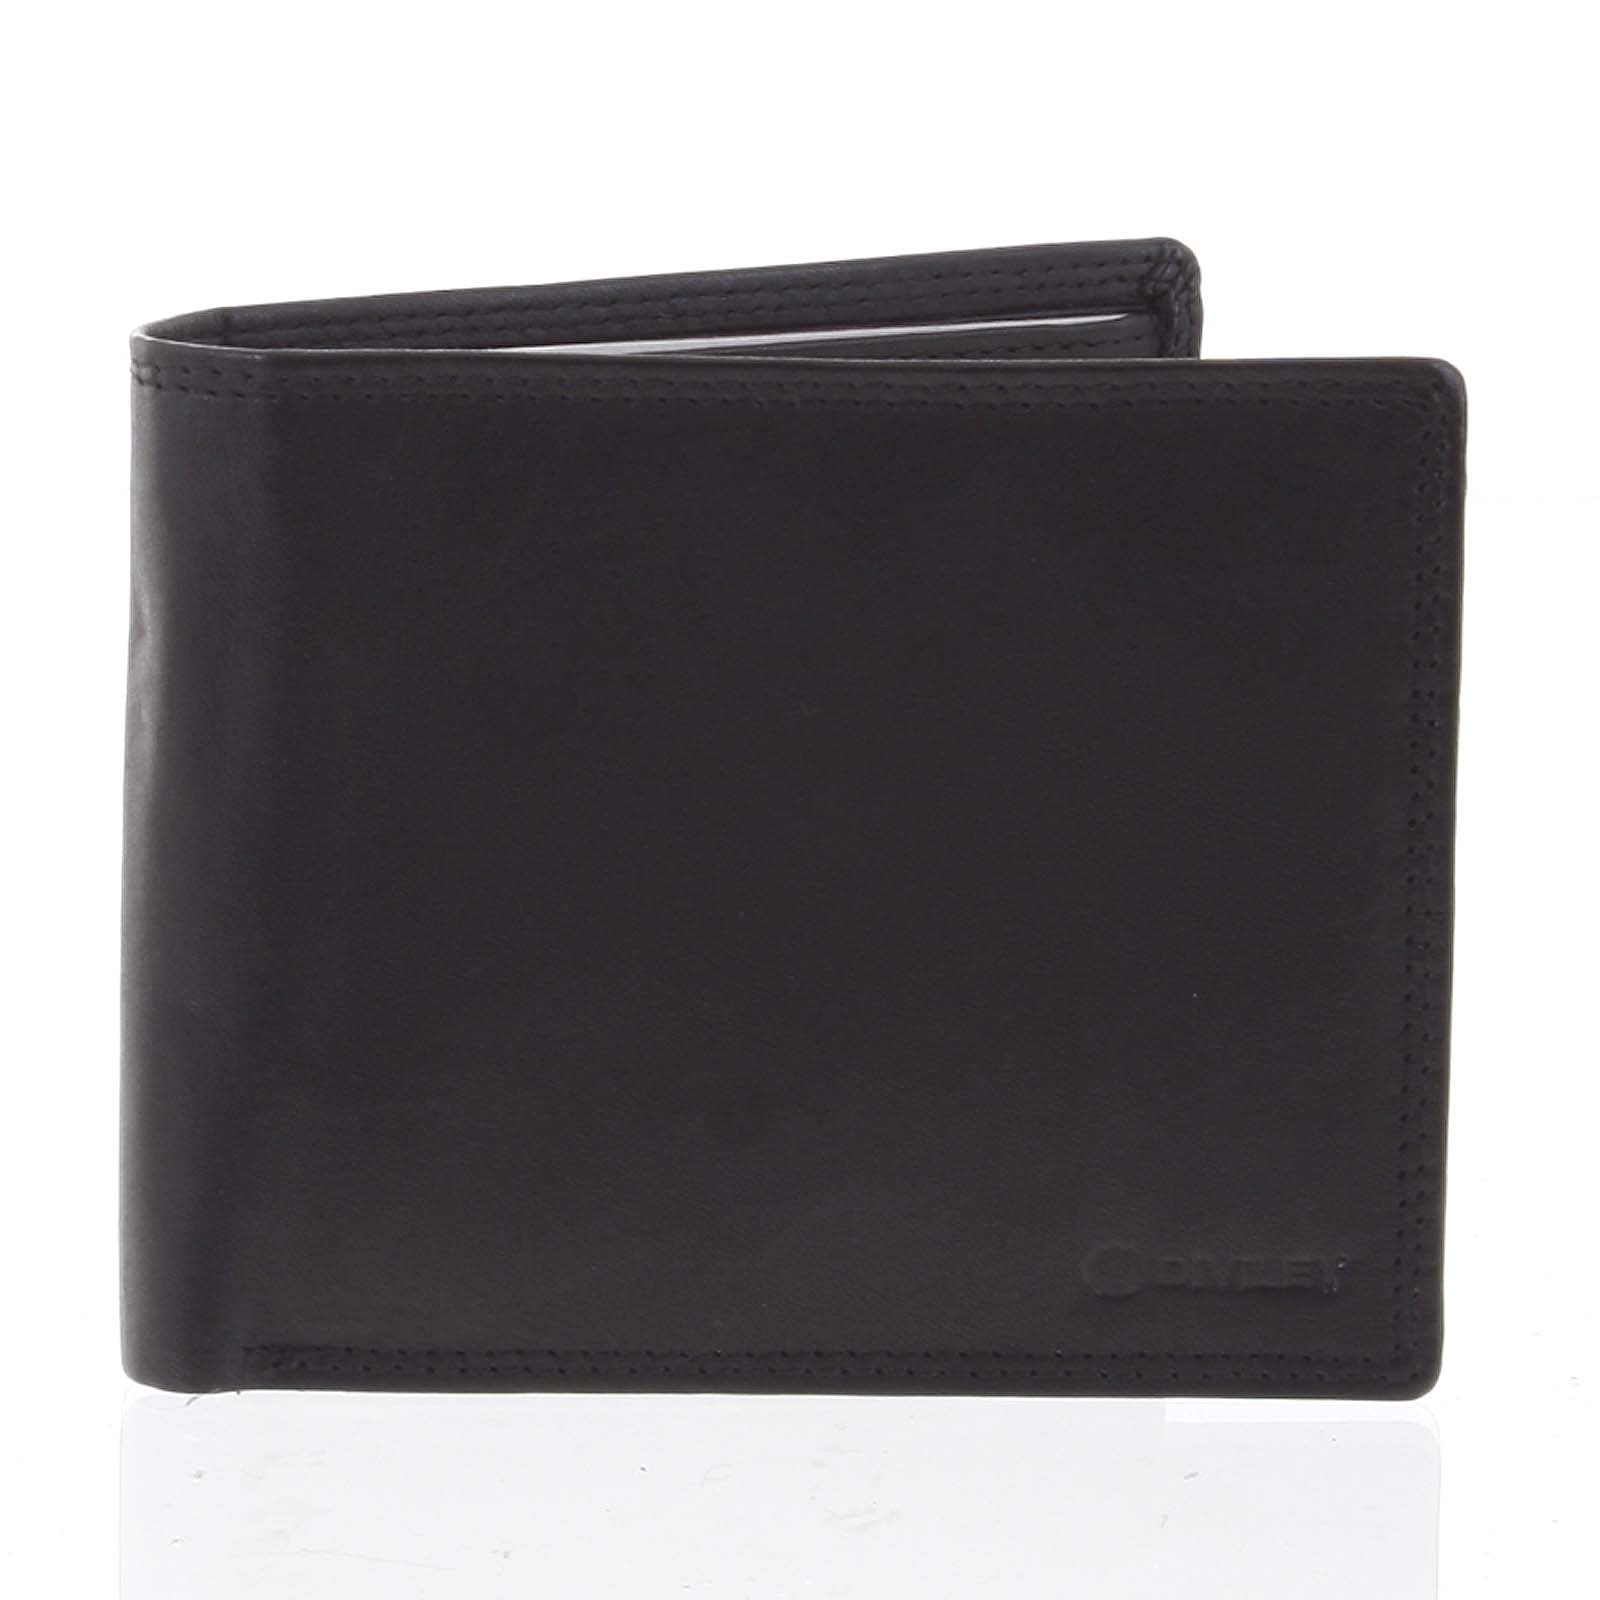 Praktická pánská volná černá peněženka - Diviley Unibertsoa